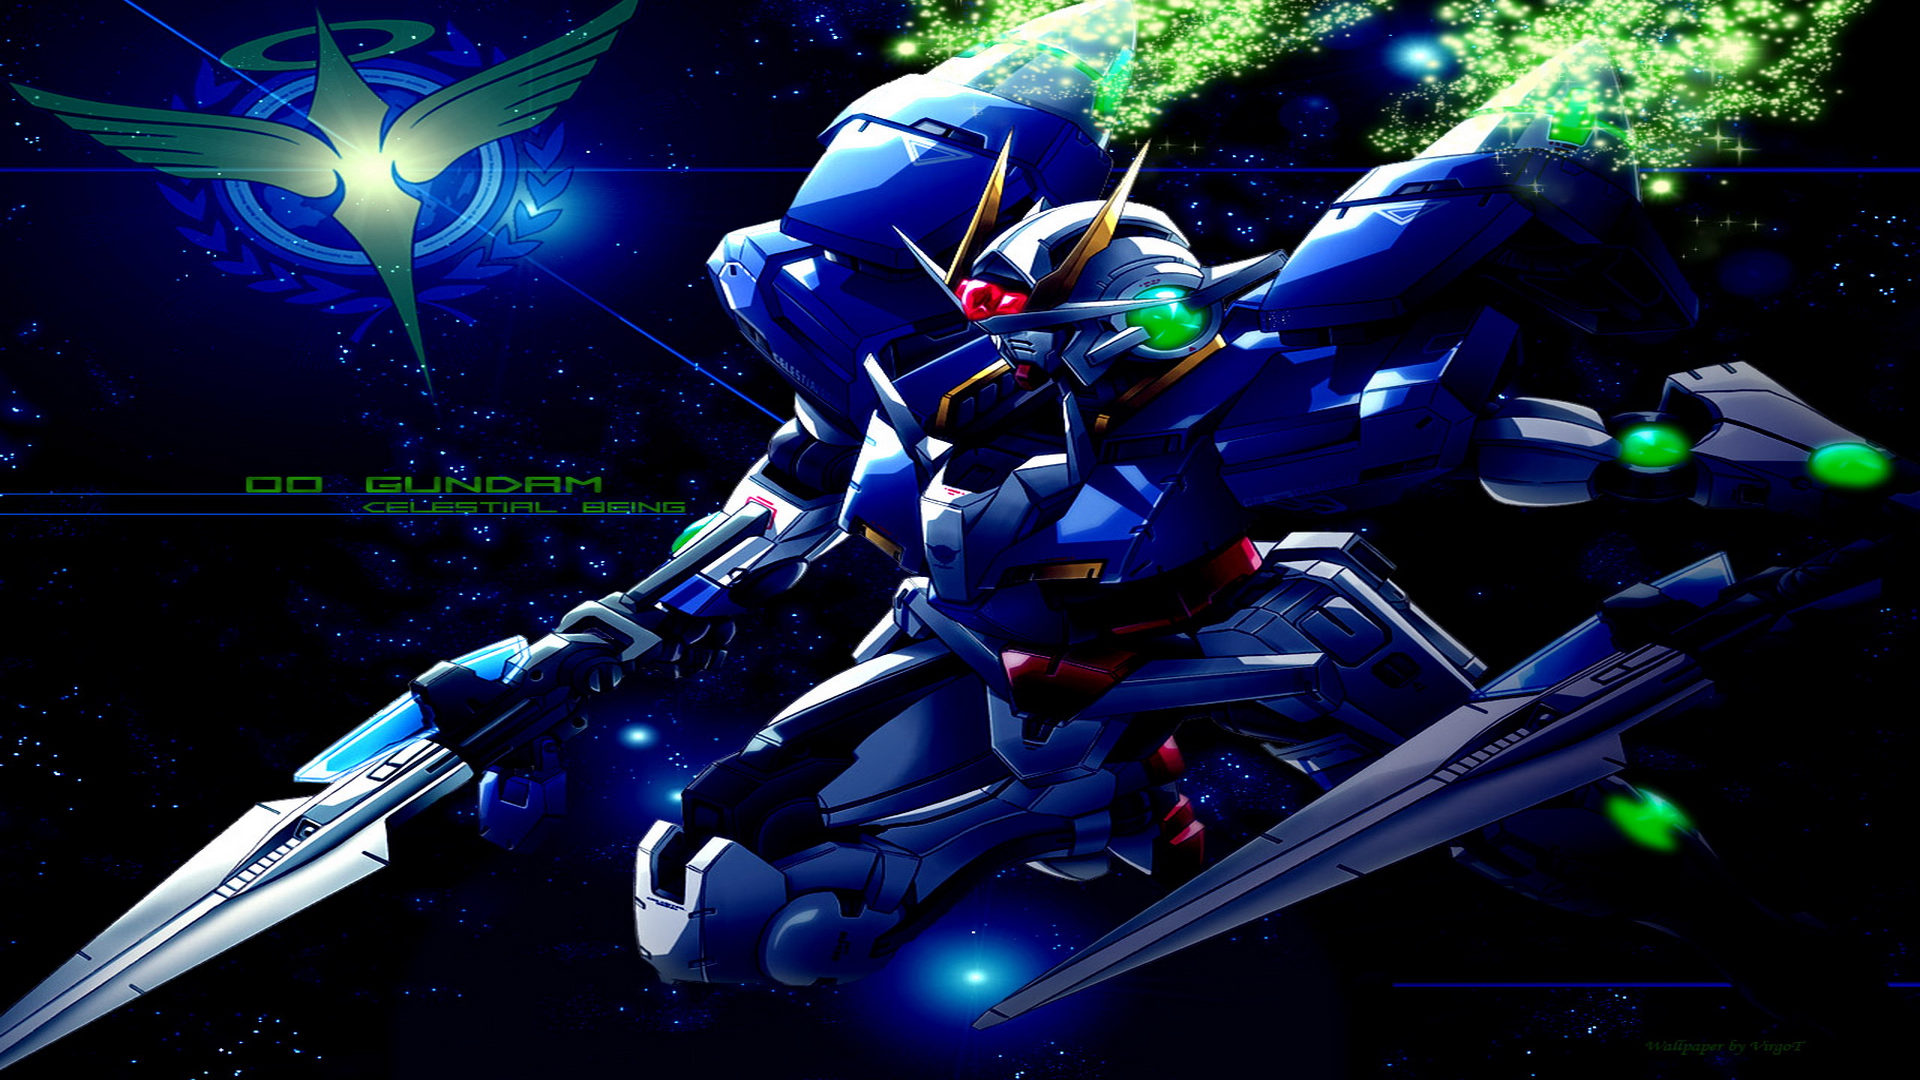 Gundam Wallpapers 1080p - WallpaperSafari